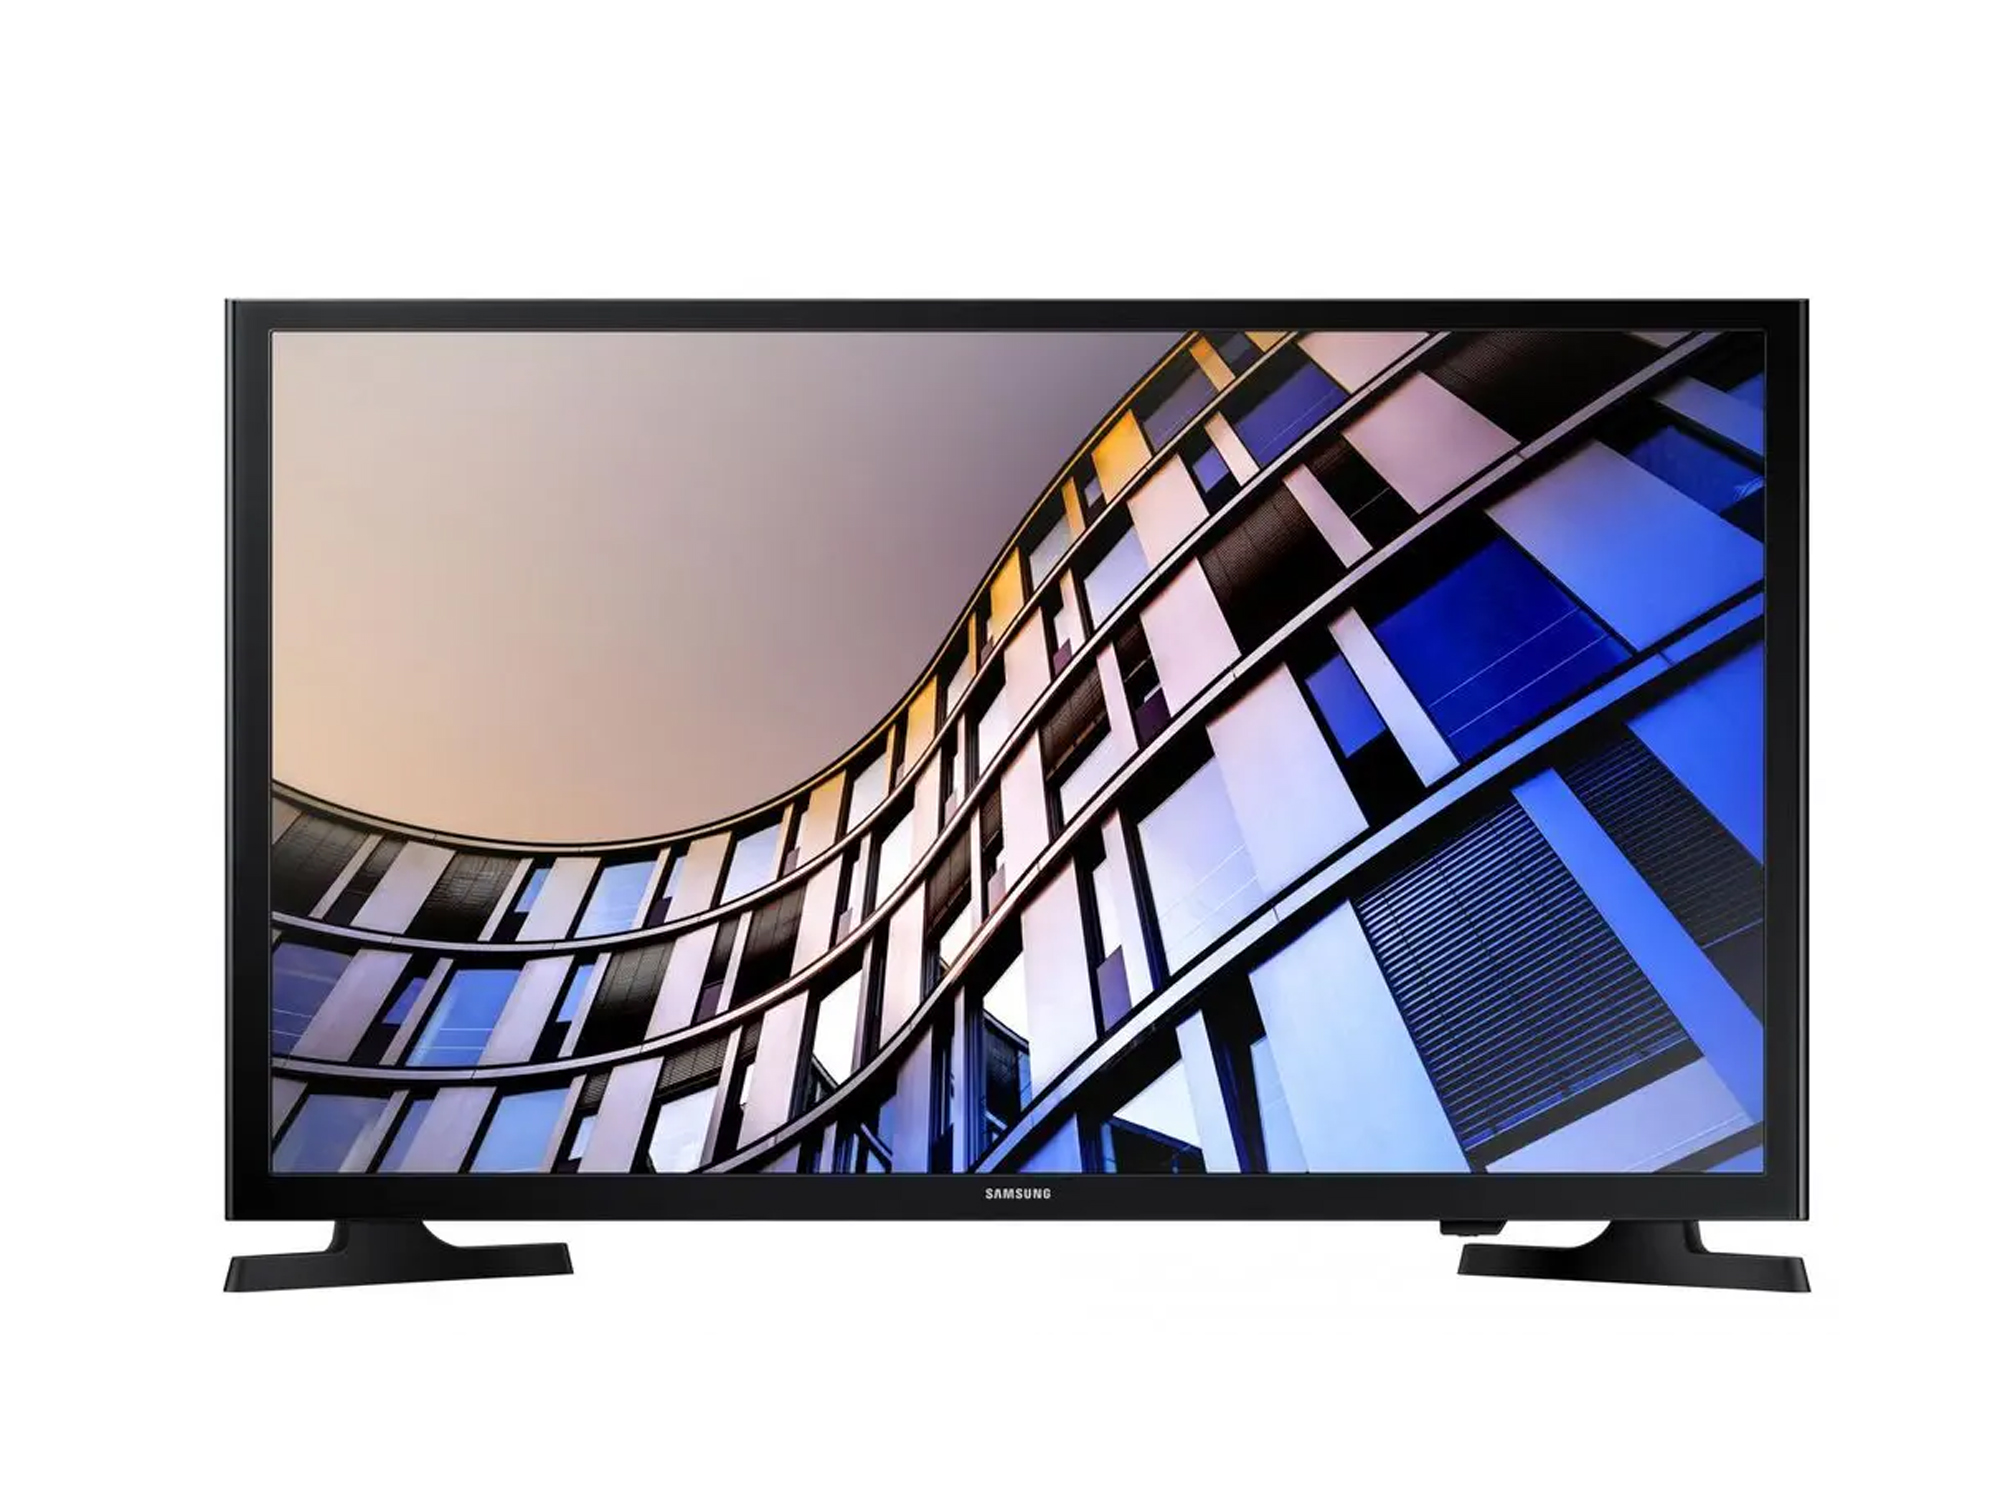 Samsung LED TV 32M4002 32" 